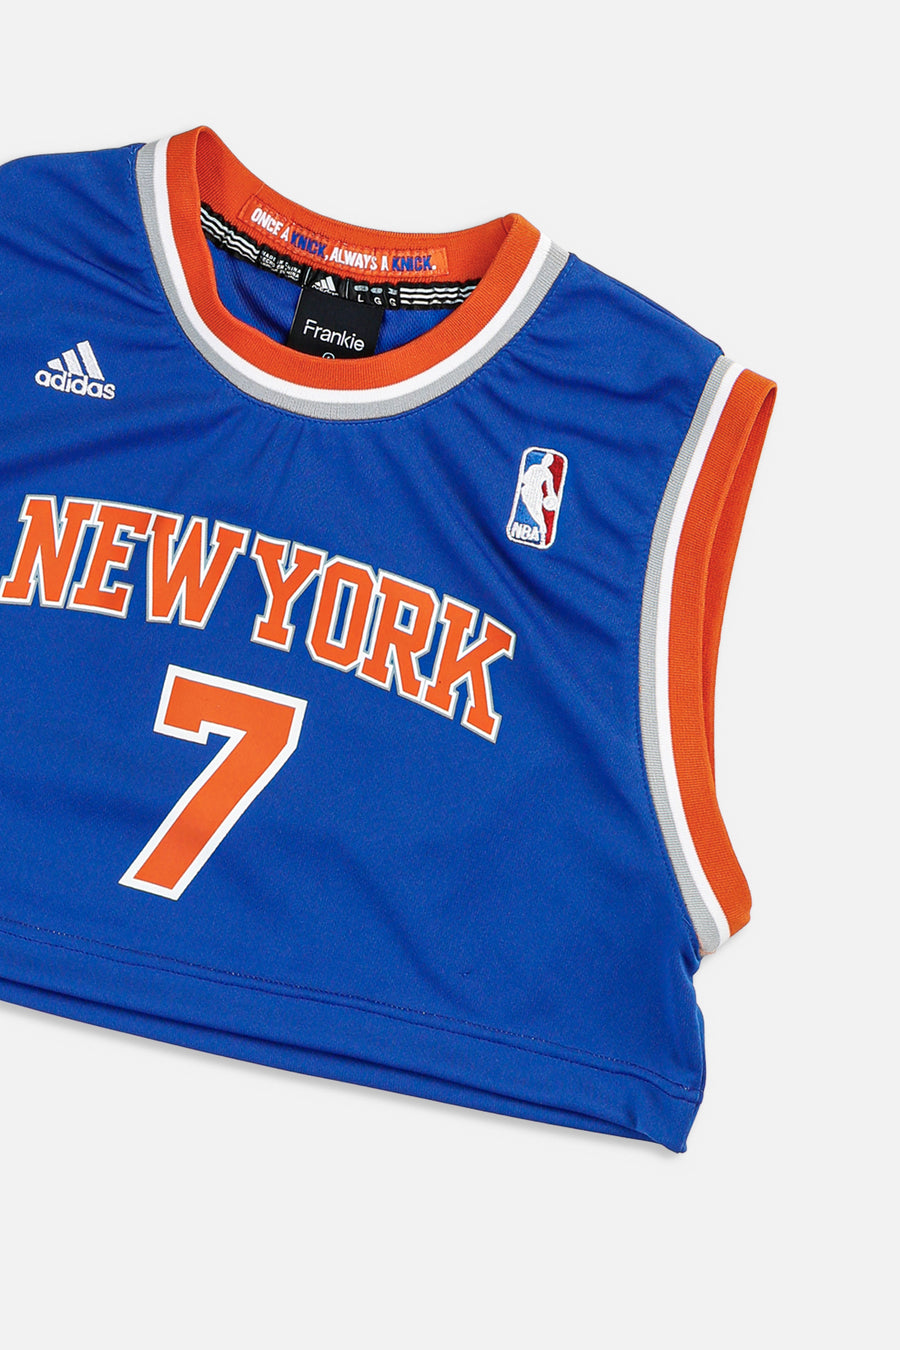 Rework New York Knicks NBA Crop Jersey - XL